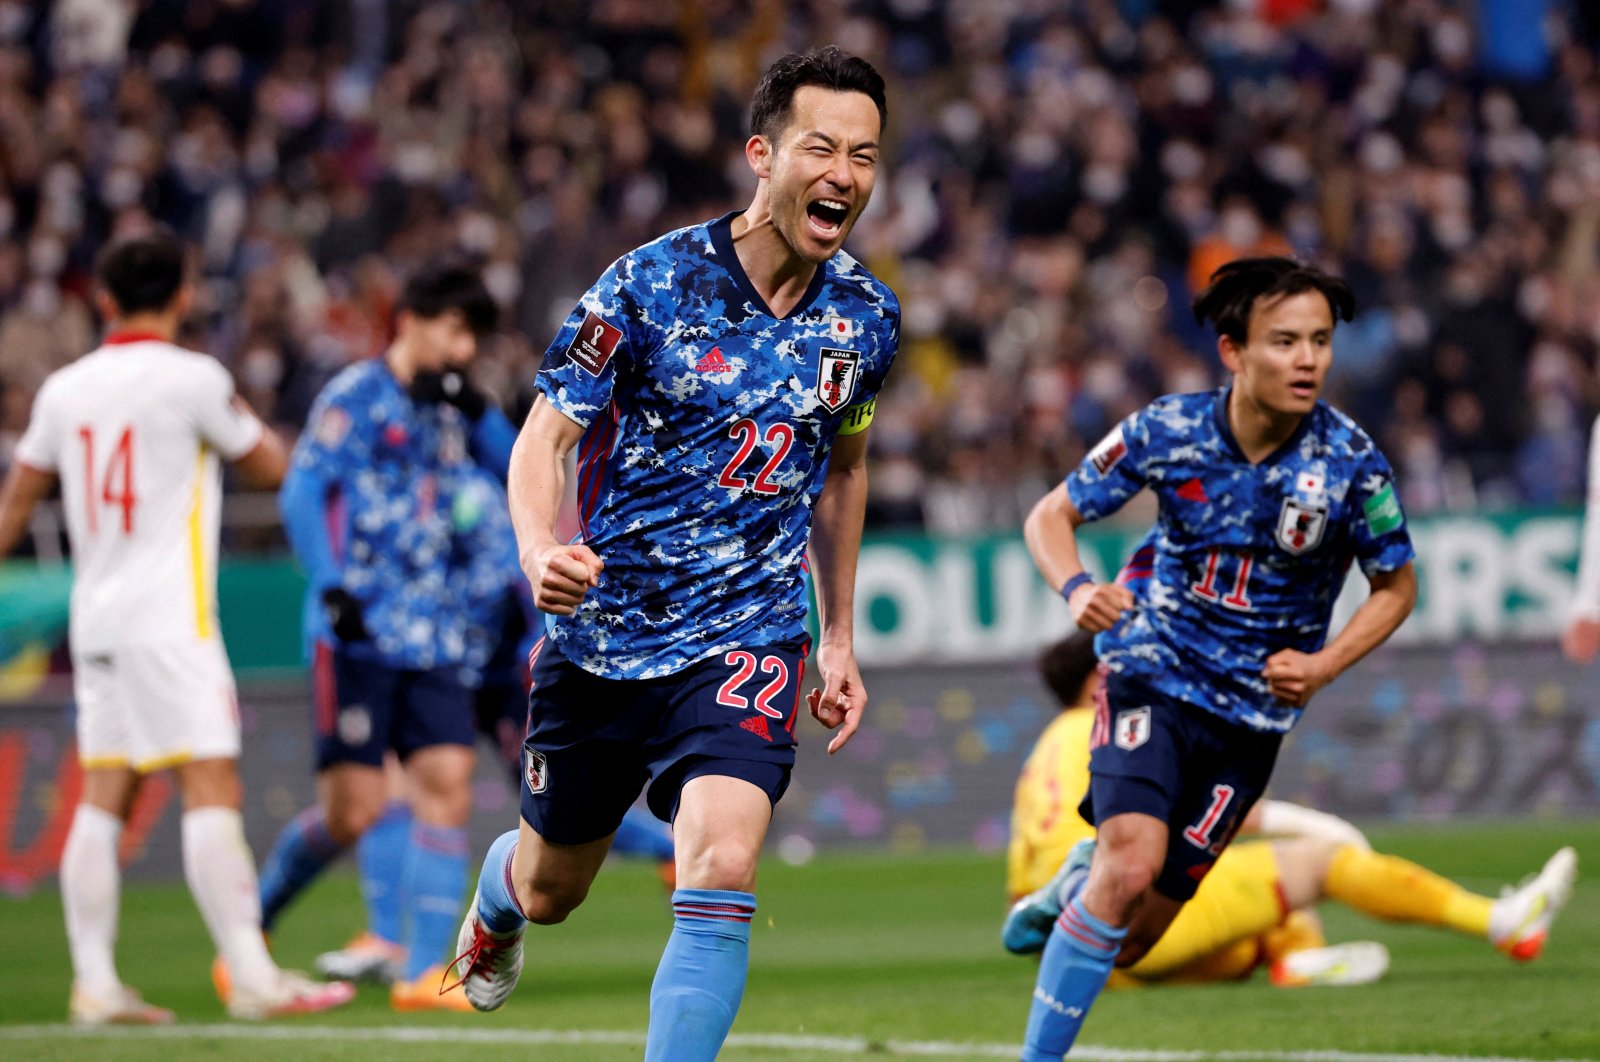 Samurai Biru Jepang akan menghadapi Brasil dalam pertandingan persahabatan sebelum Piala Dunia